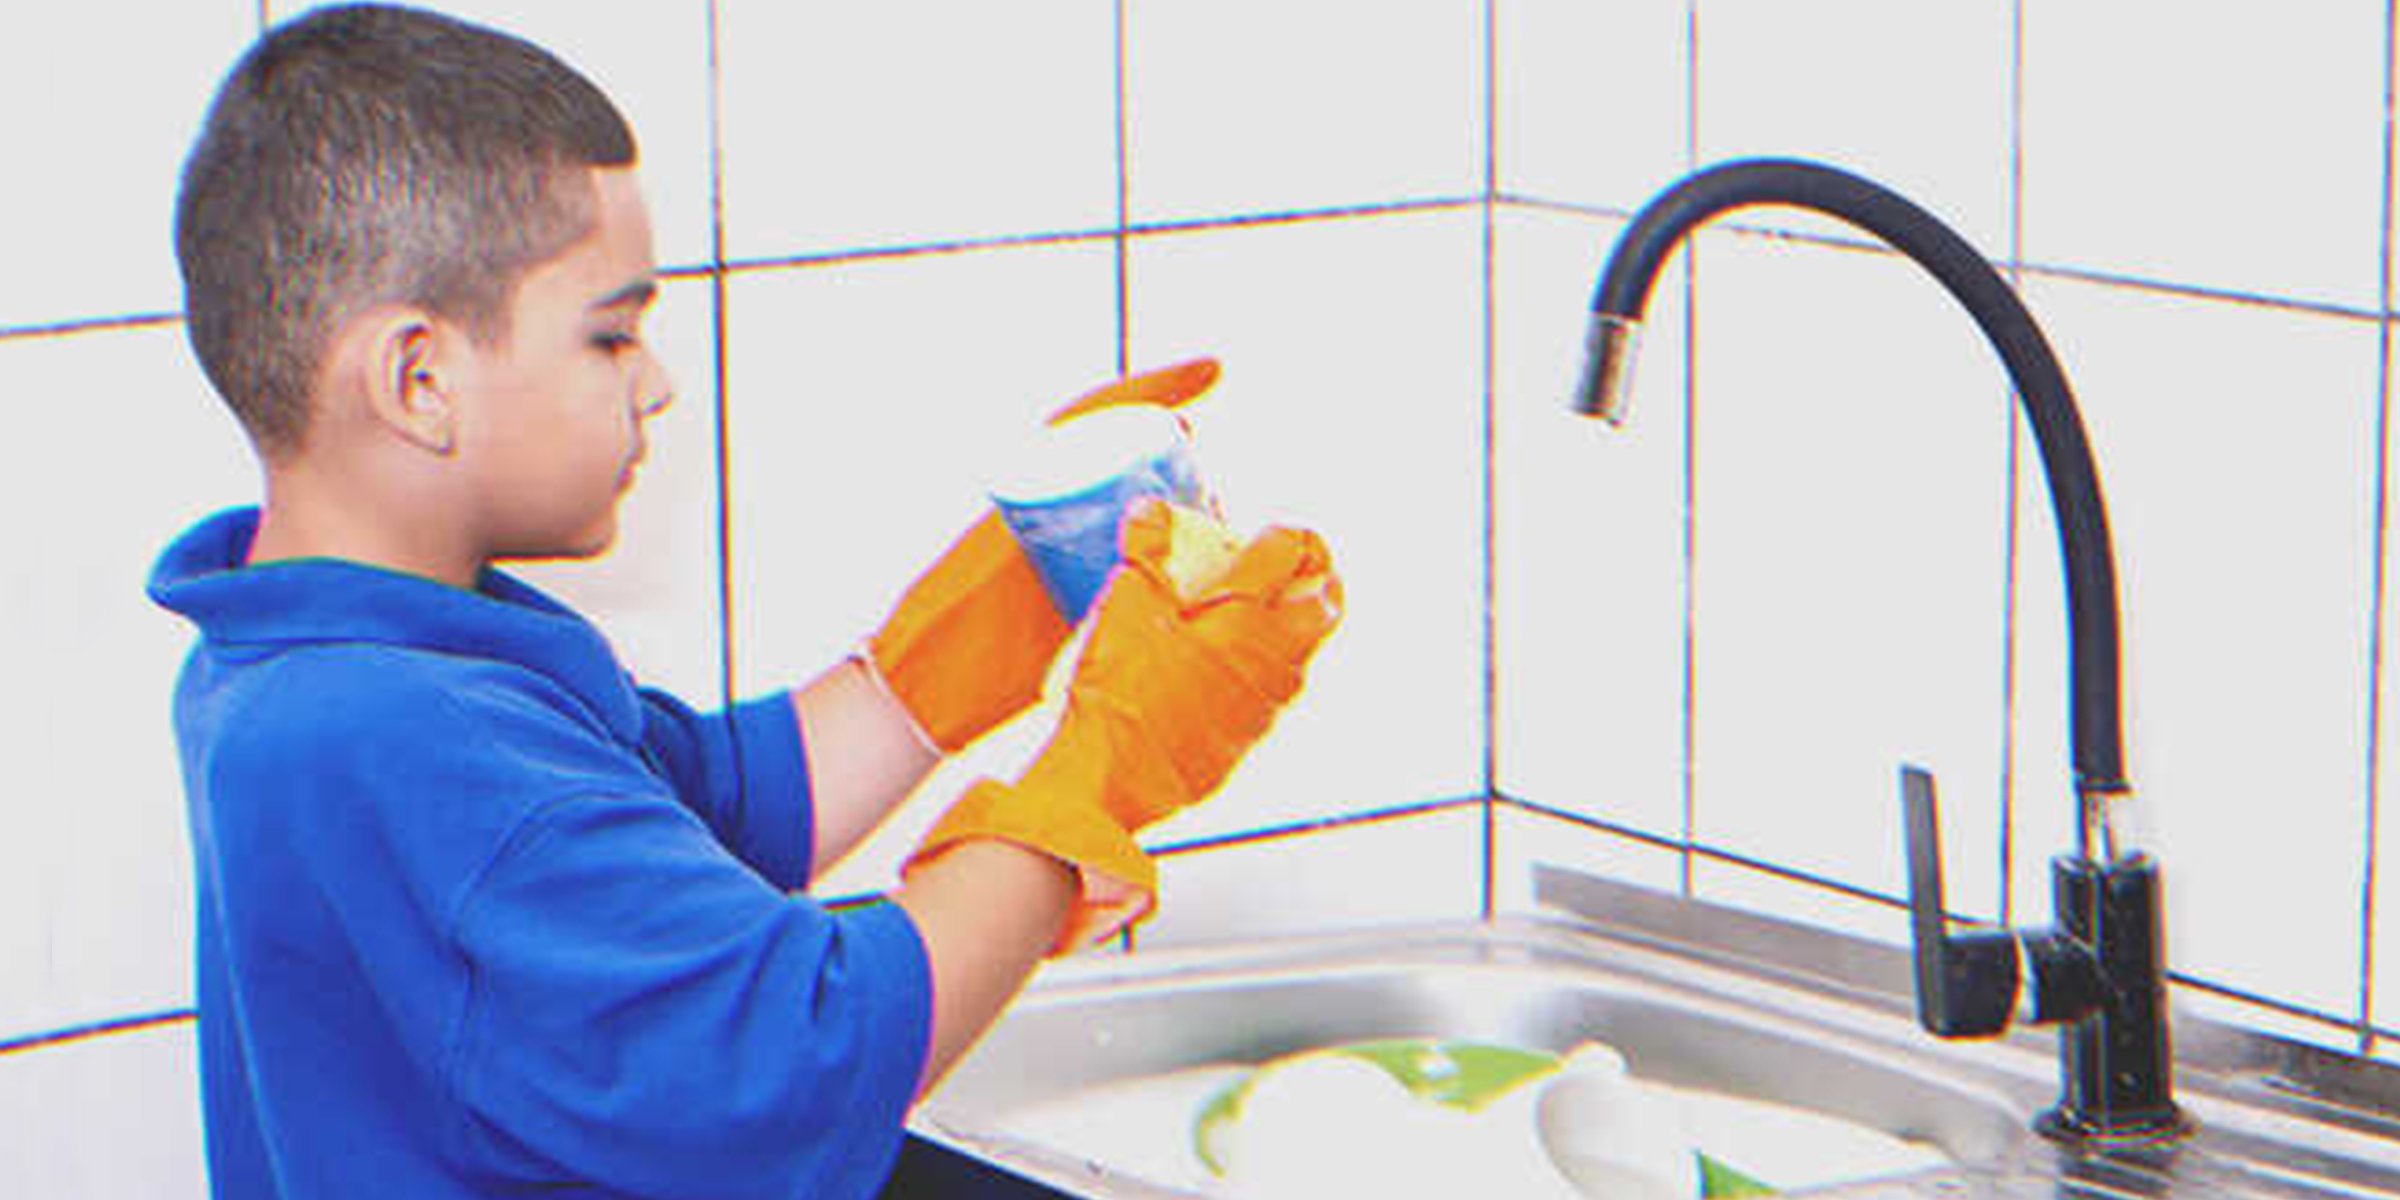 Niño lavando platos. | Foto: Flickr / Marco Verc (CC BY 2.0)h